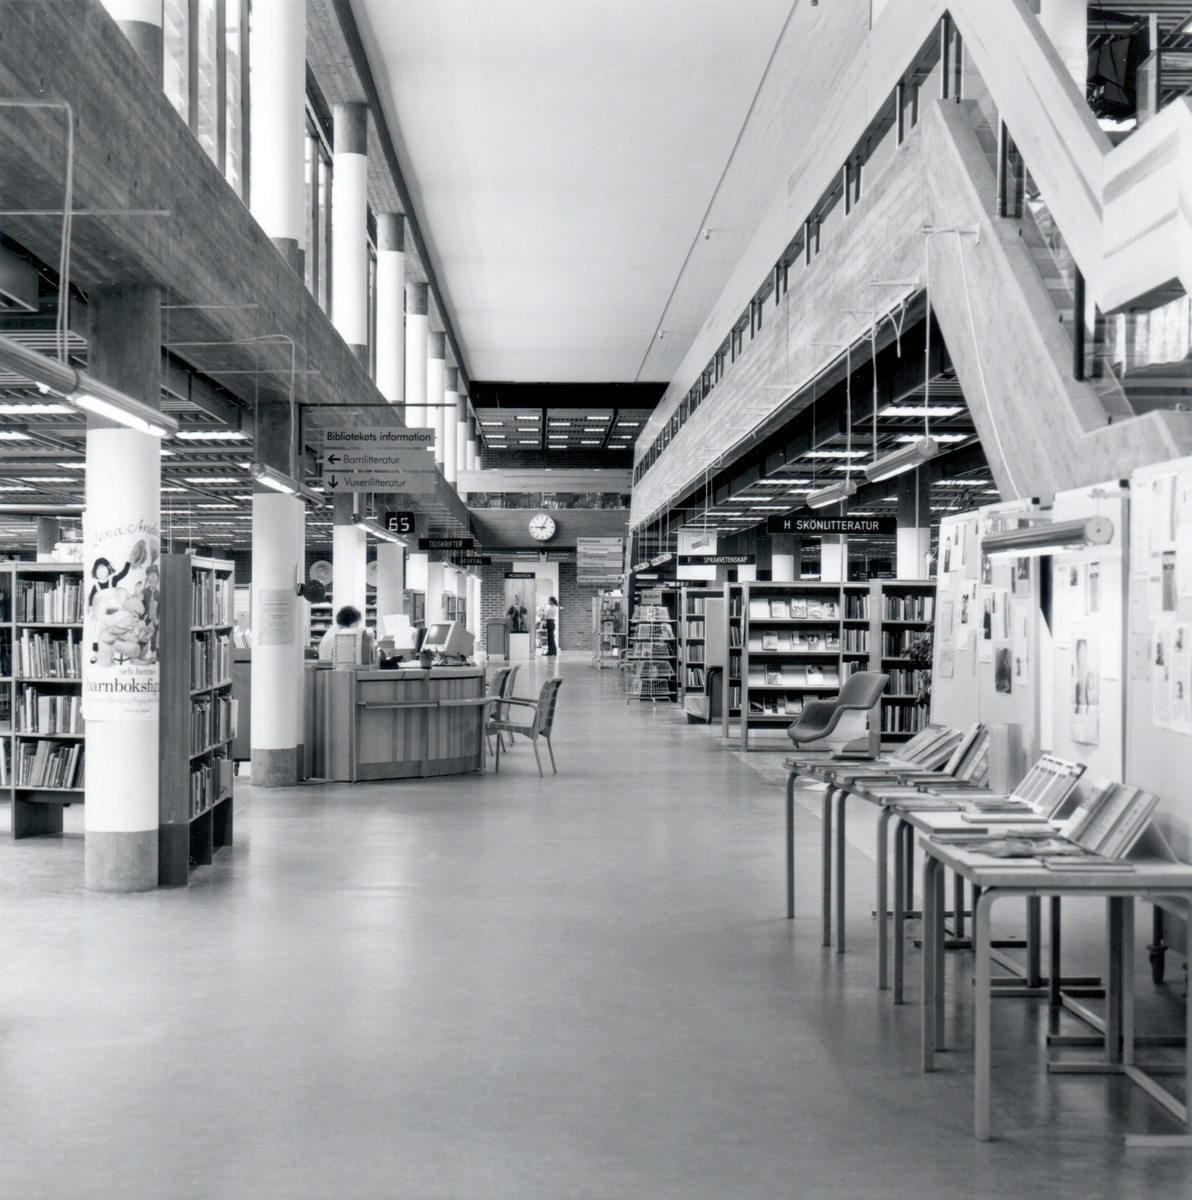 Interiör av Stifts- och landsbiblioteket.
Stadsbiblioteket: Efter en arkitekttävling 1966 ritades och inreddes biblioteket av arkitekterna Bo Cederlöf och Carl-Ewert Ekström. Byggnaden öppnades för allmänheten 1973-11-03, men invigningen skedde först 1974-06-06. Natten mellan 20-21 september 1996 utbröt en brand och huvuddelen av biblioteket förstördes.